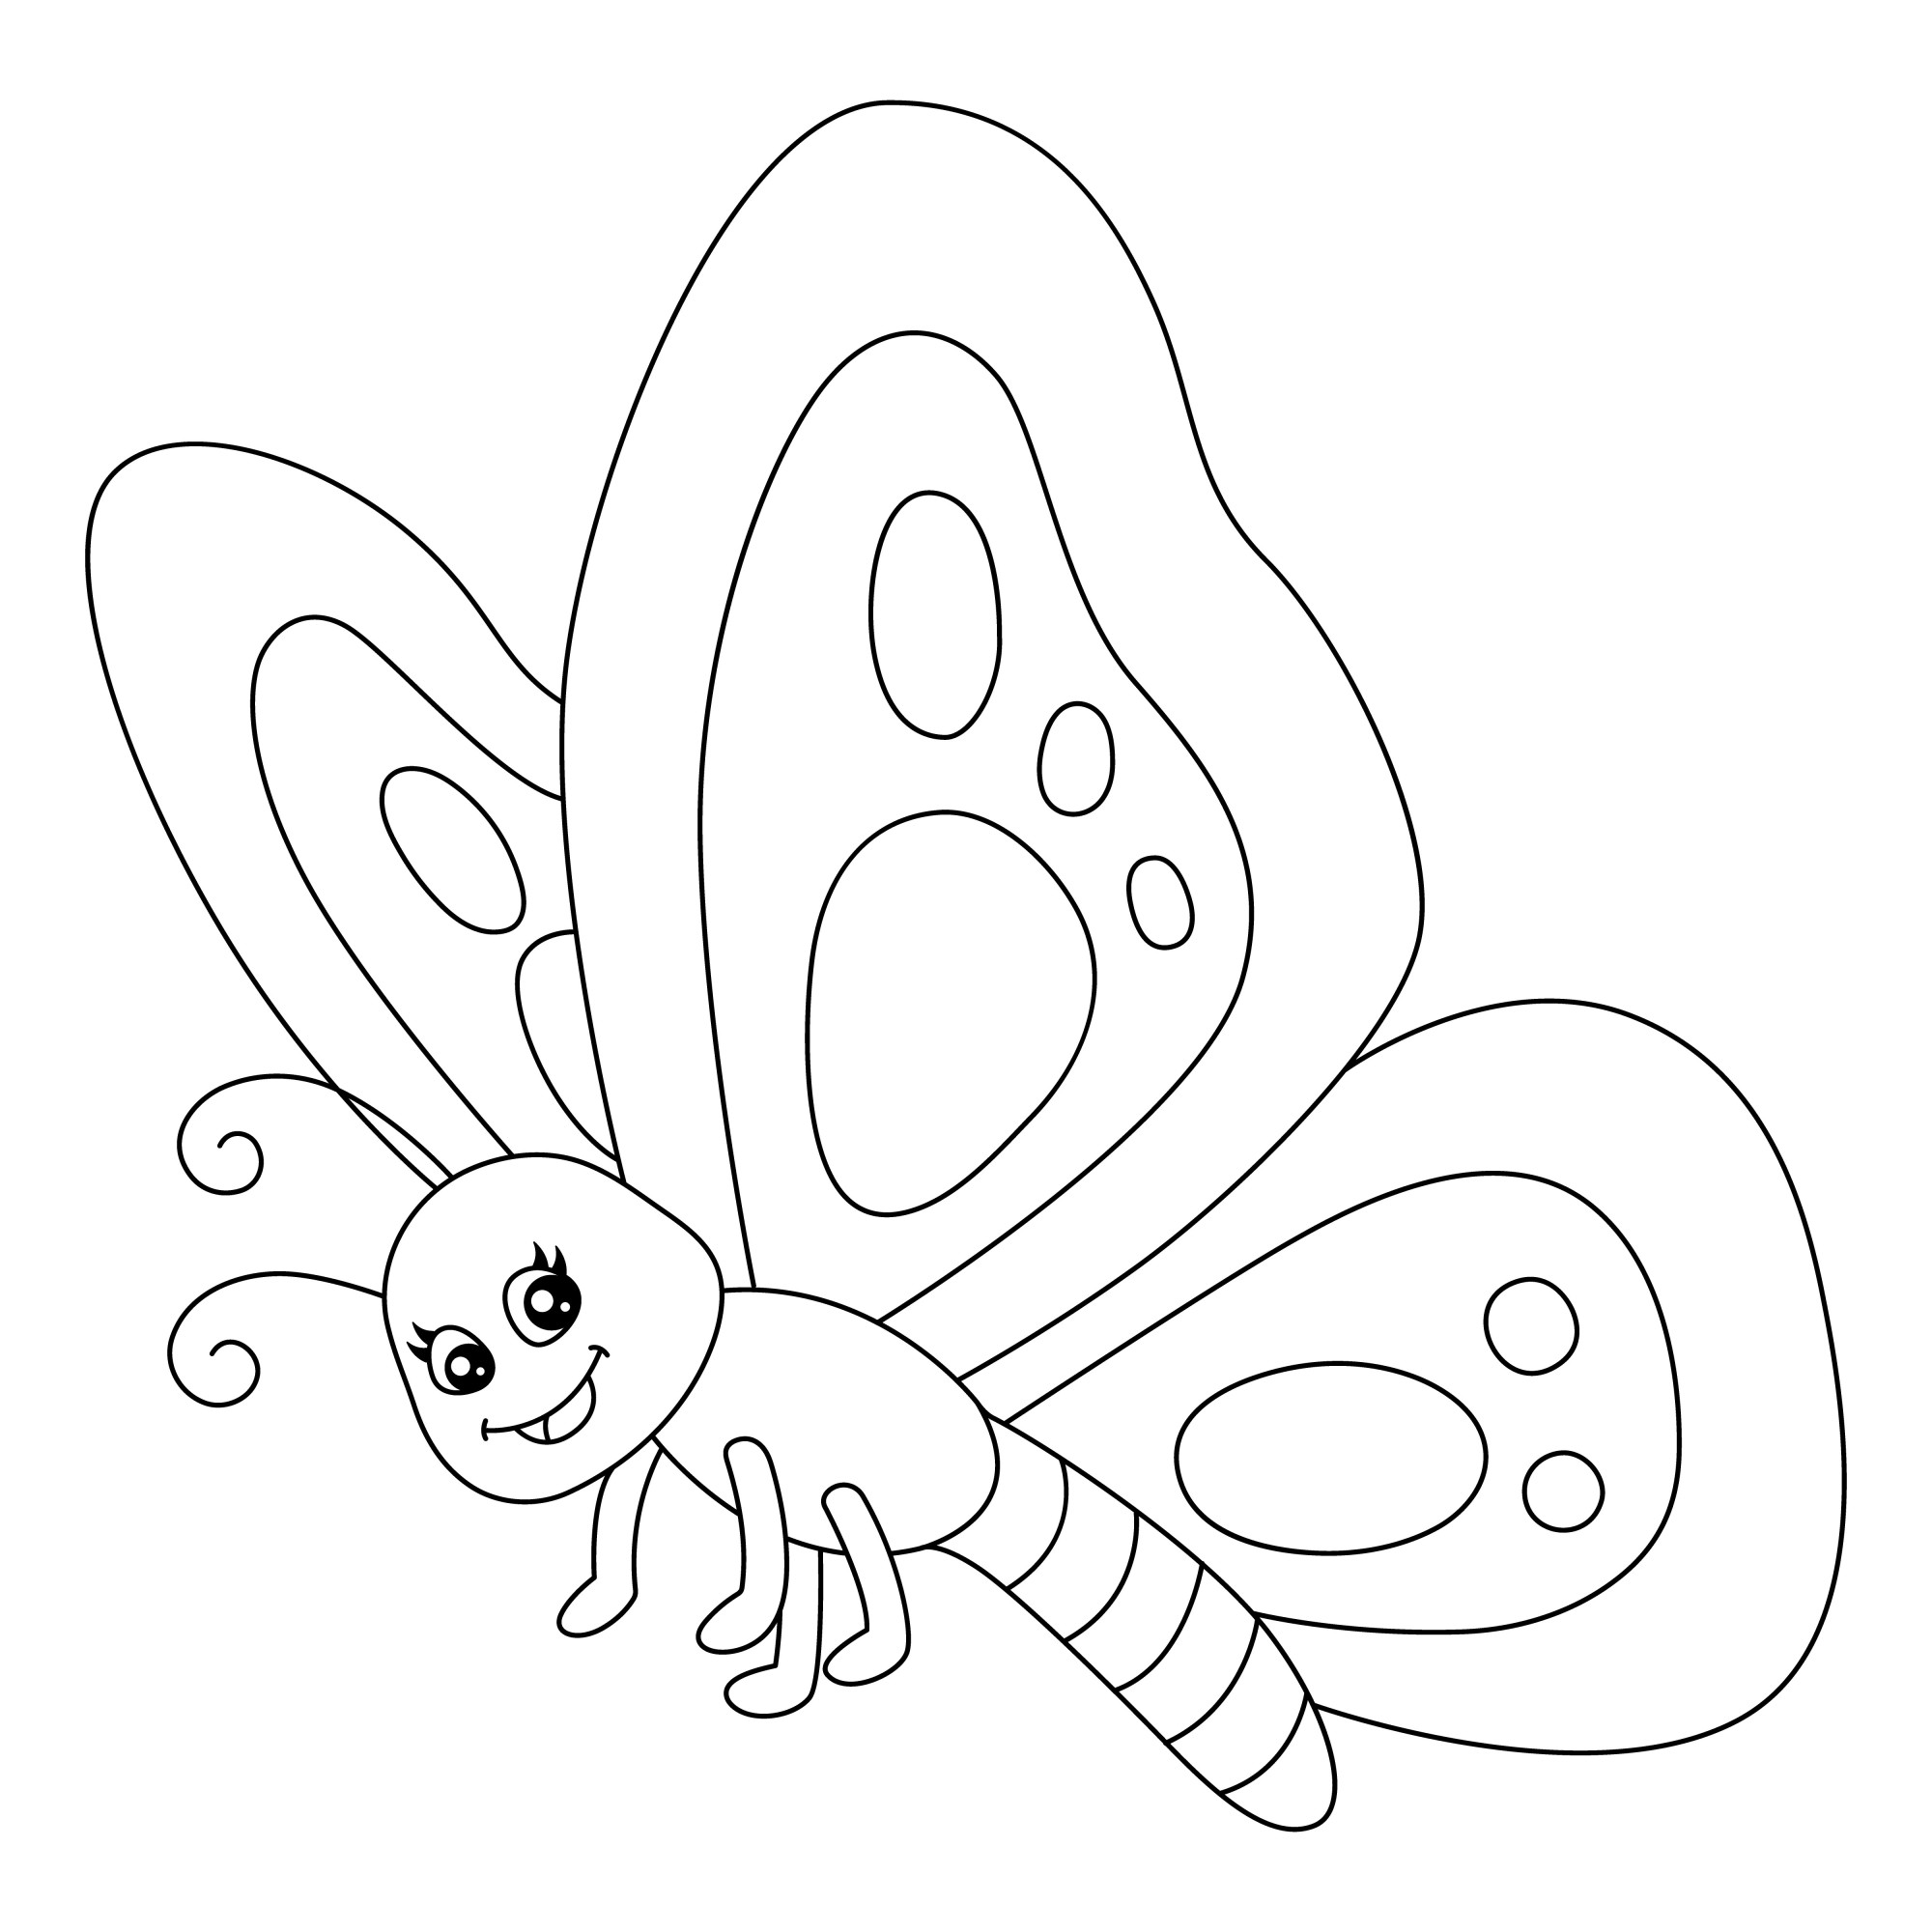 Раскраска для детей: смешная бабочка малыш с большими крыльями